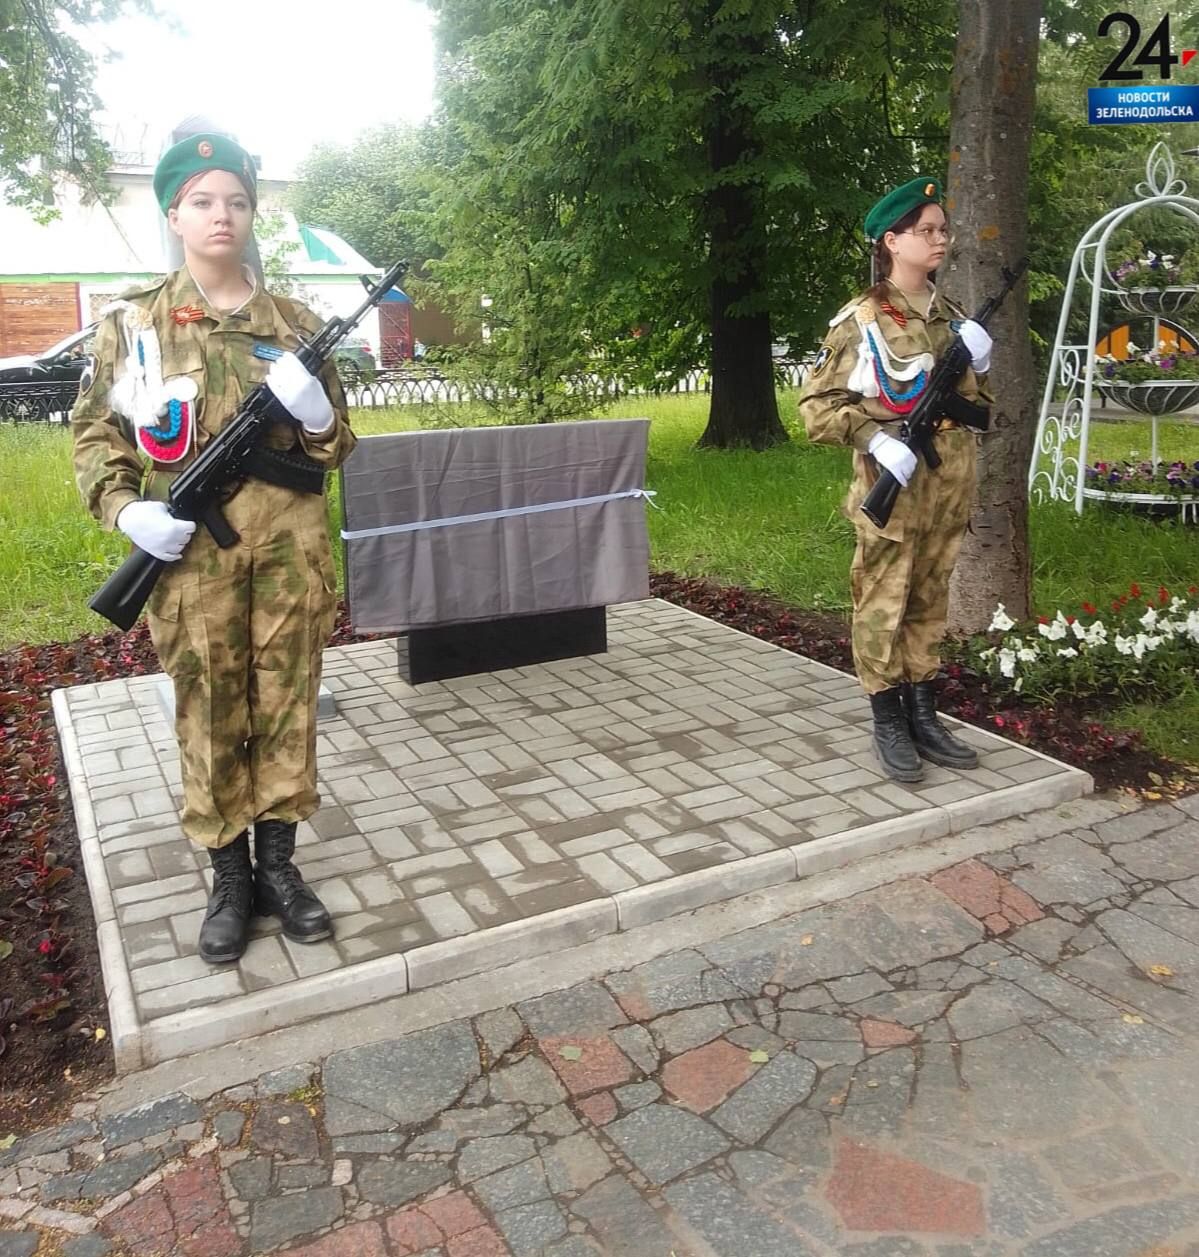 Сегодня состоялось открытие памятника зеленодольским пограничникам в честь 105-летия пограничных войск состоялось накануне Дня пограничника в Парке Победы